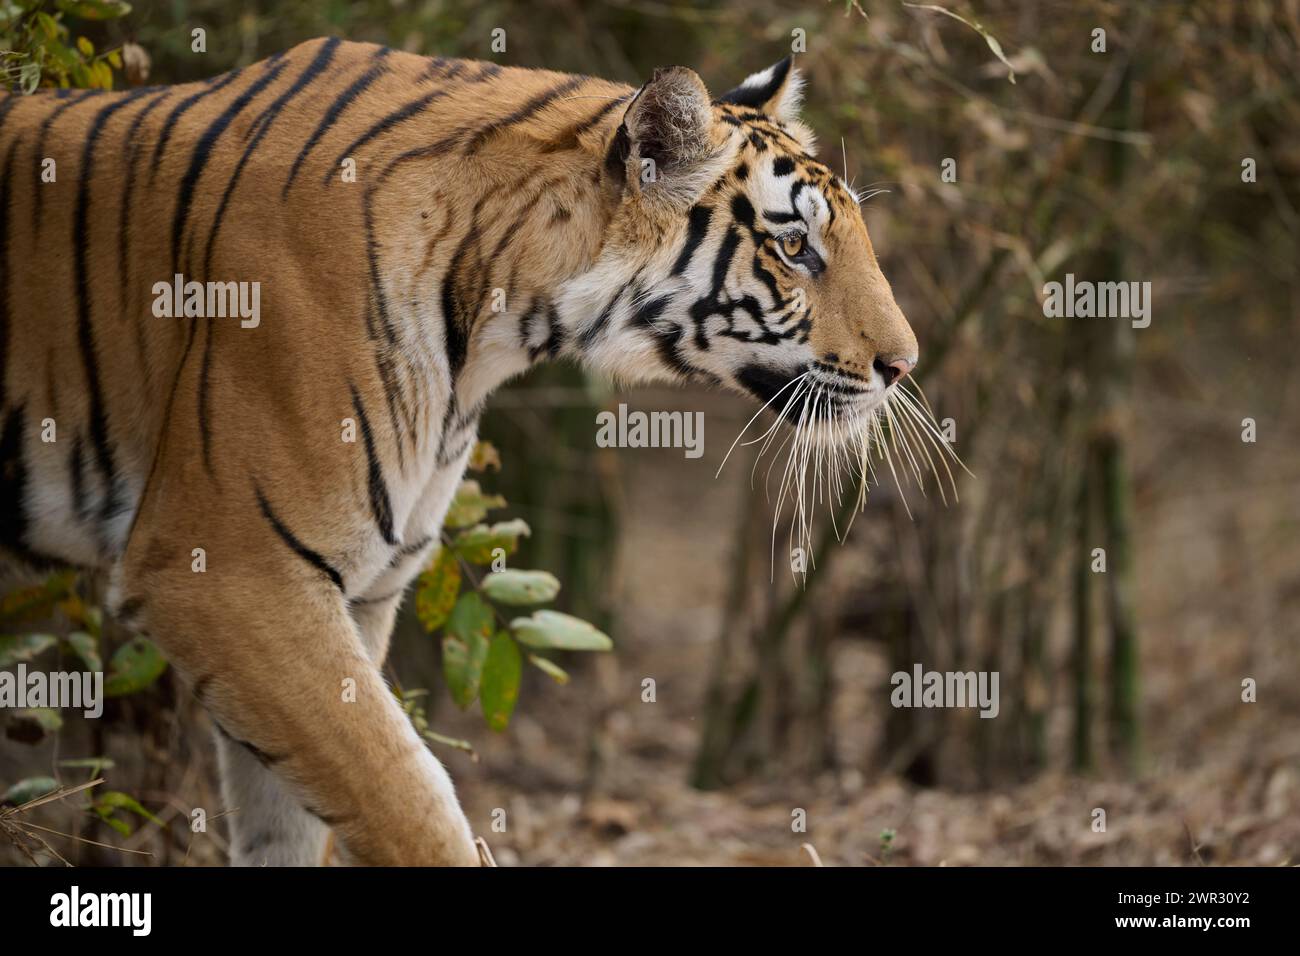 Bengal tiger stalking, Bandhavgarh National Park, India Stock Photo